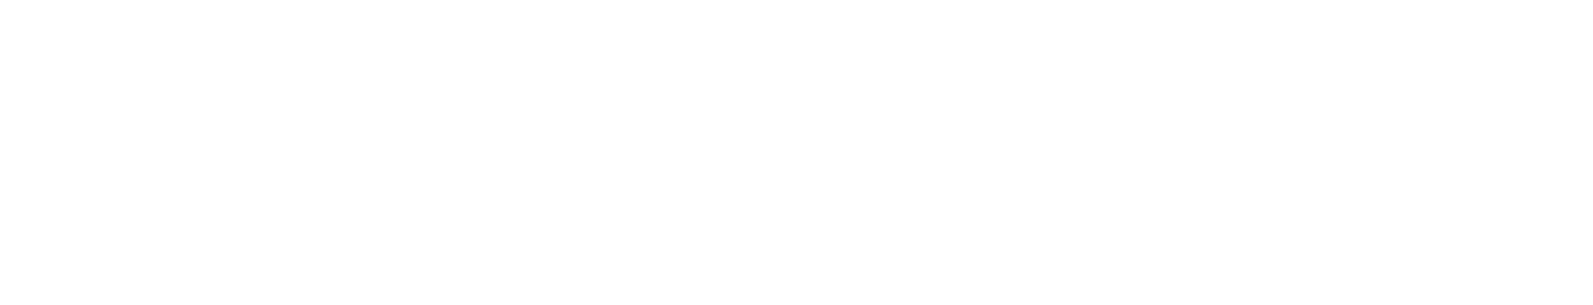 Mobilicom logo large for dark backgrounds (transparent PNG)